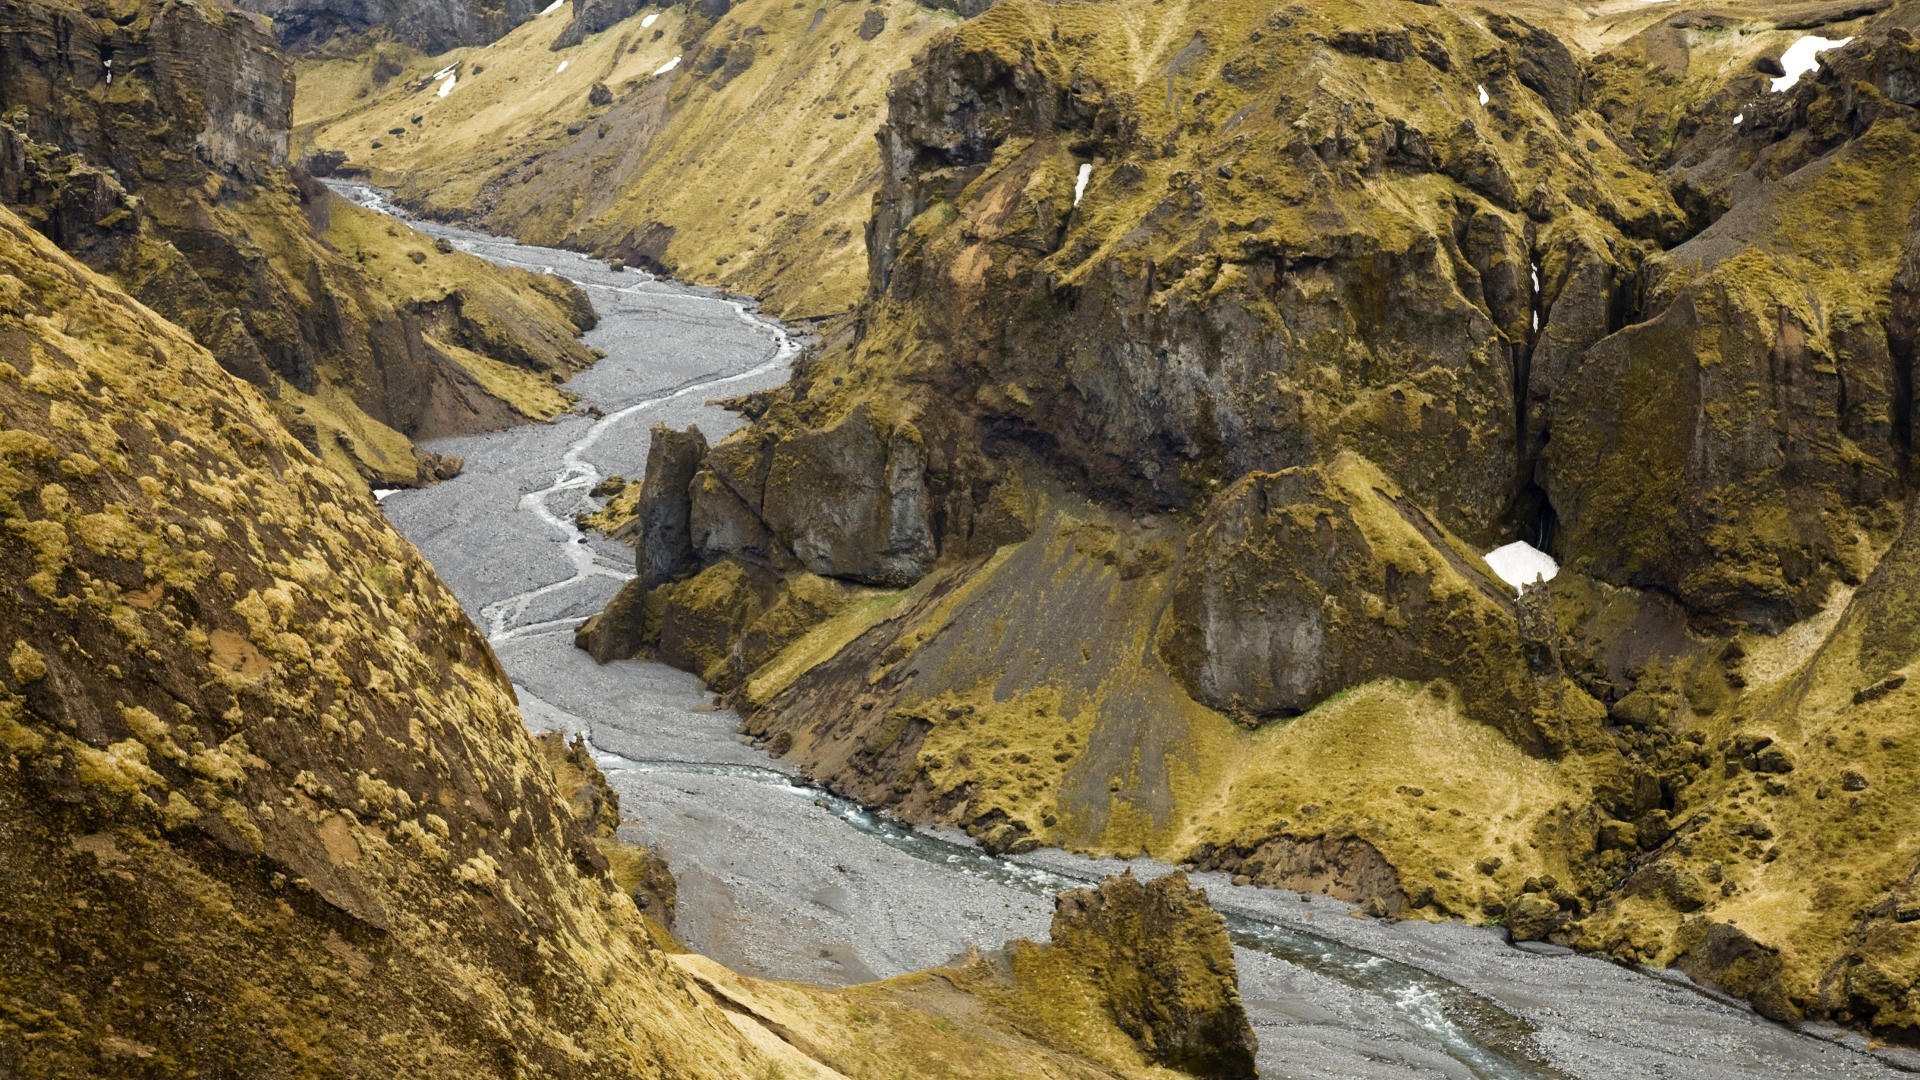 General 1920x1080 Iceland landscape nature rocks nordic landscapes